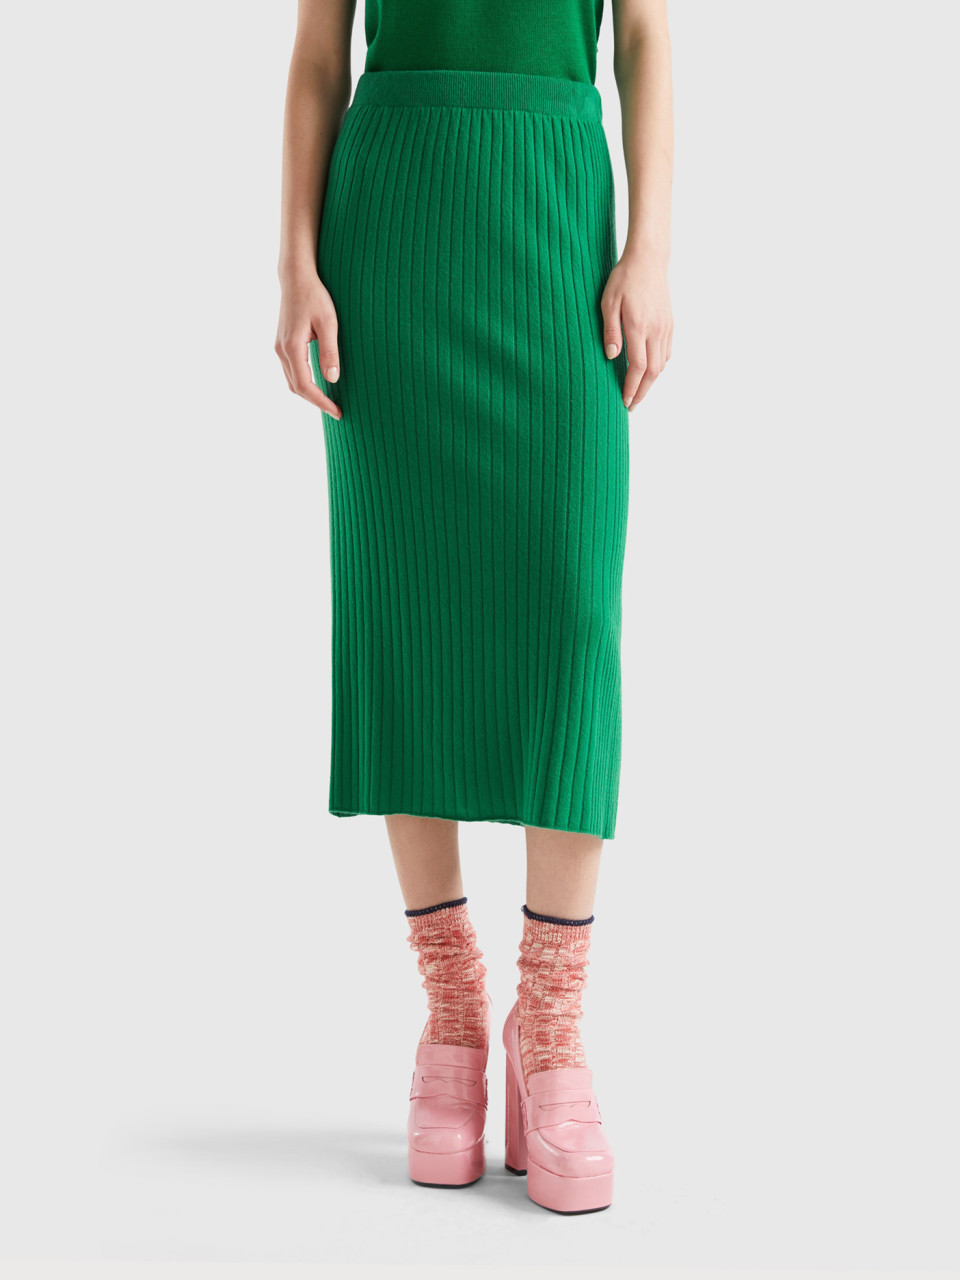 Benetton, Knit Pencil Skirt, Green, Women